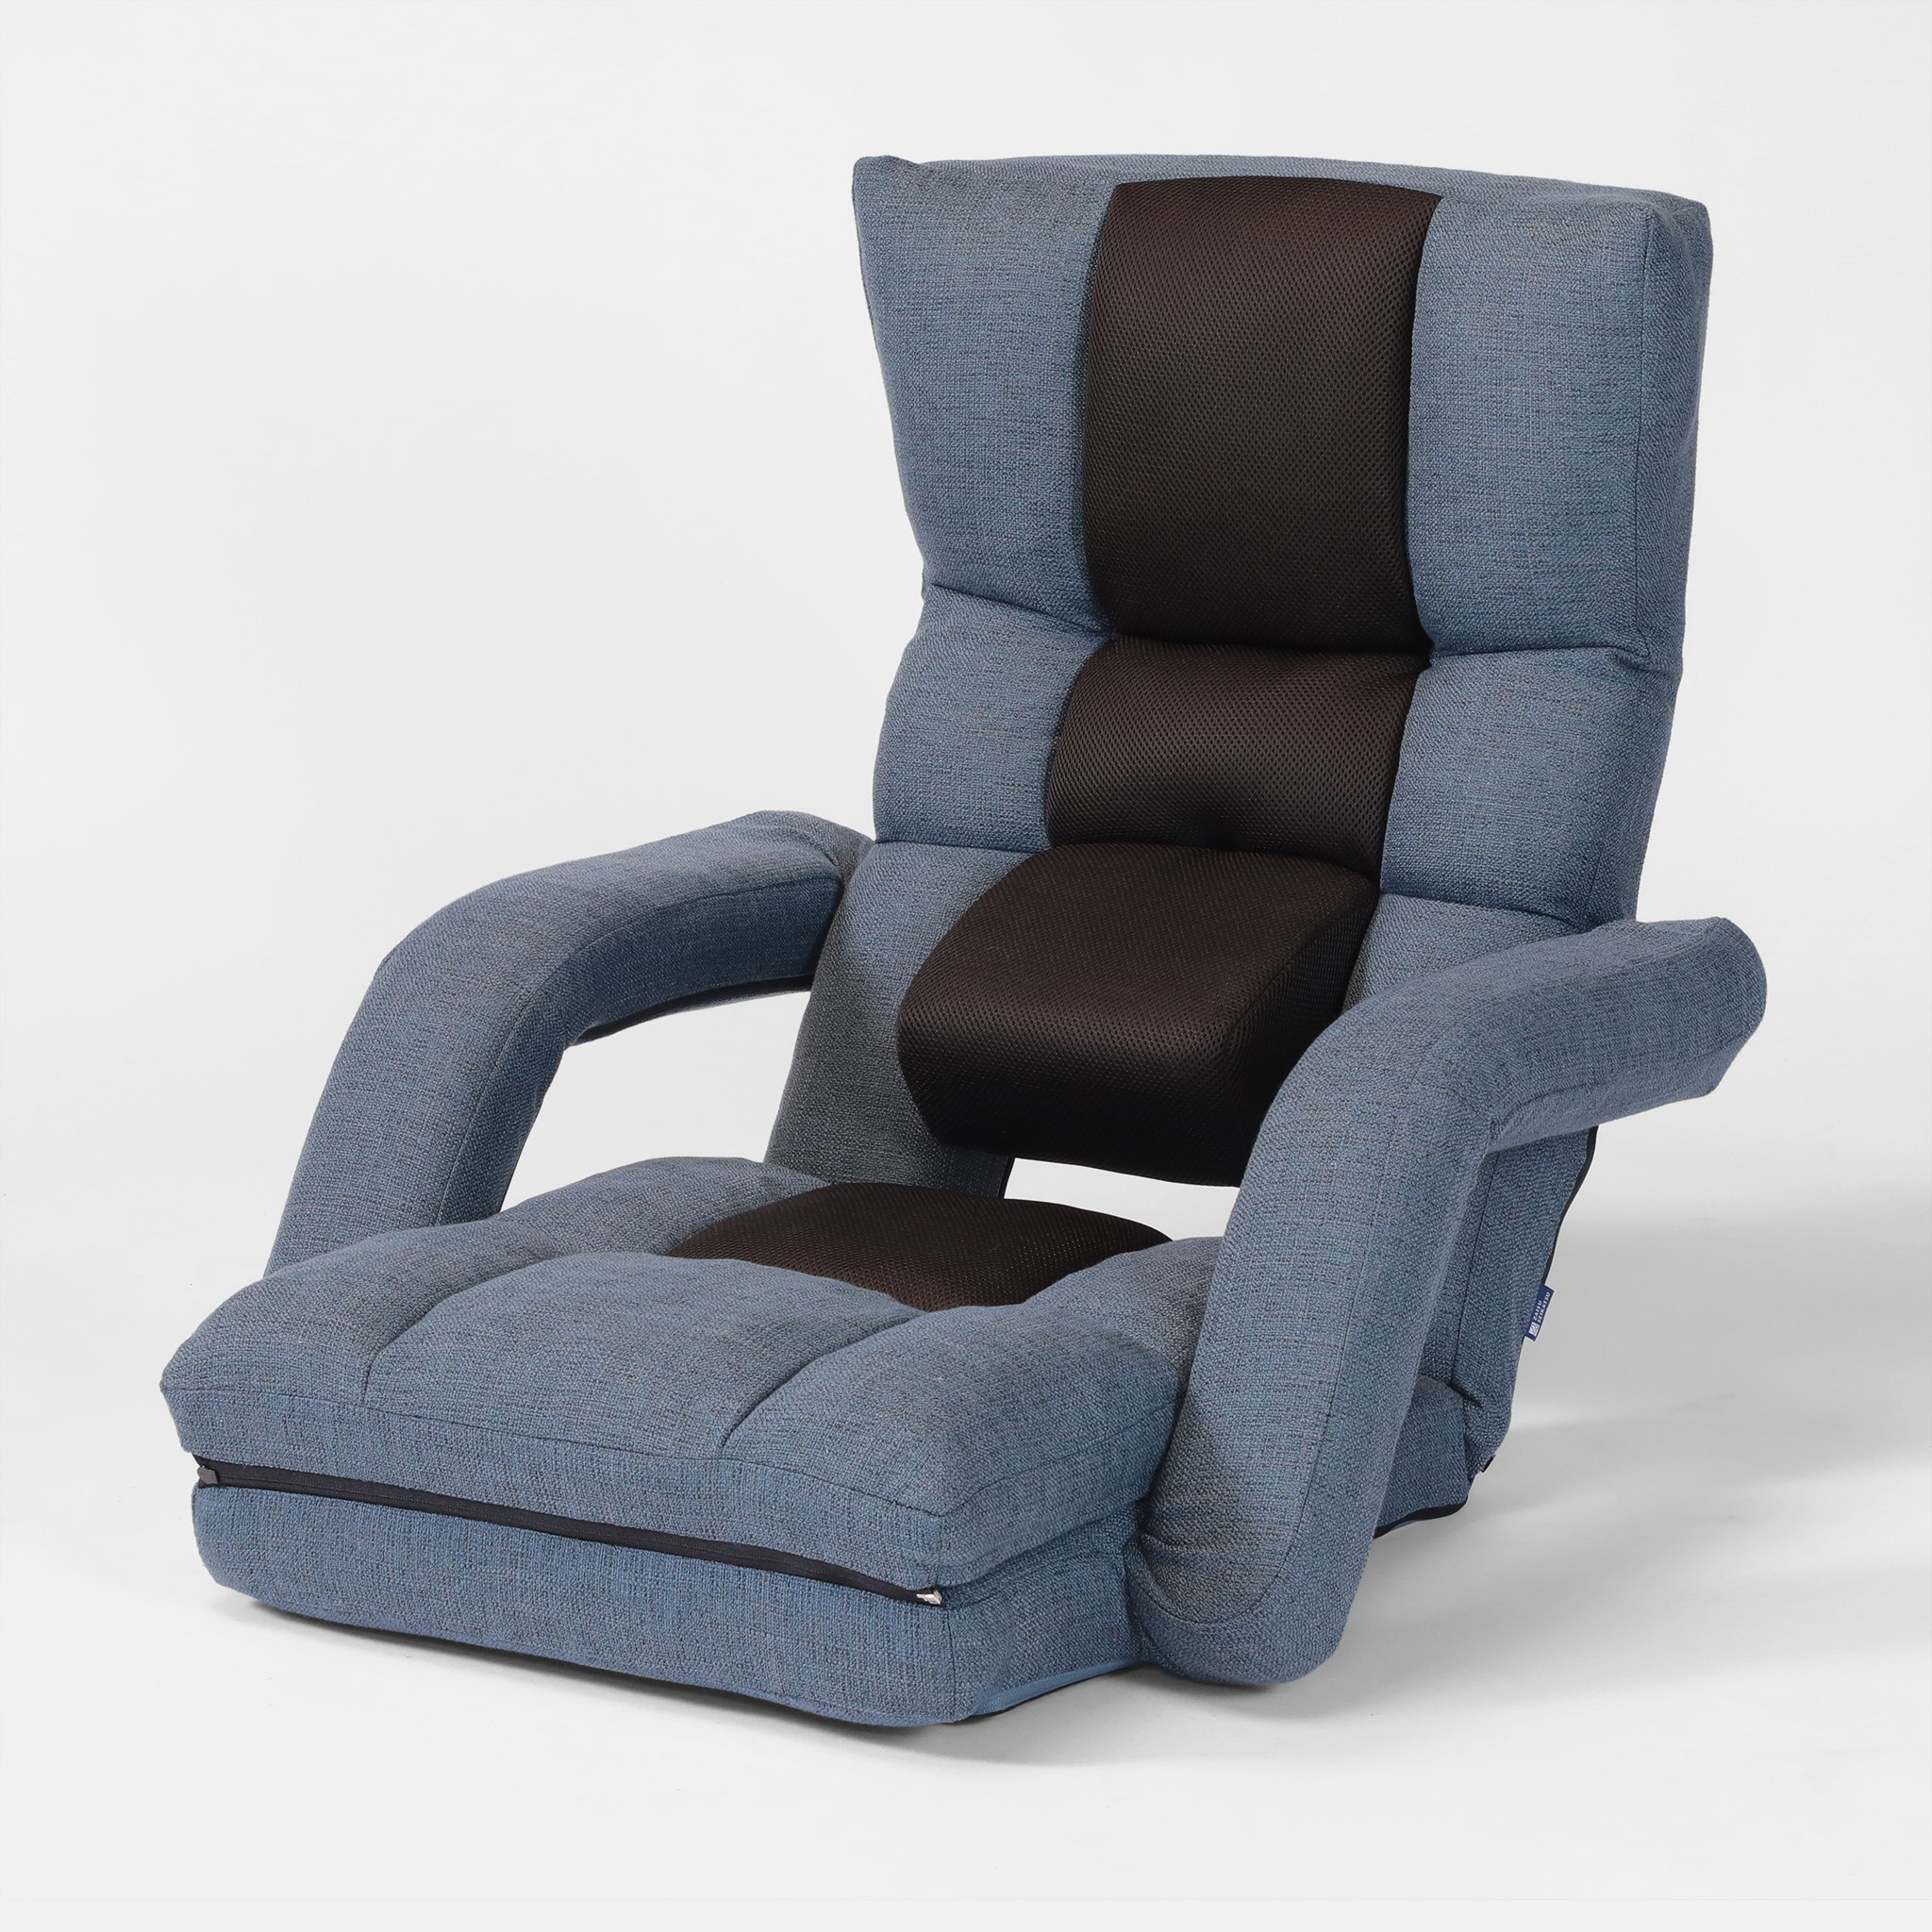 腰の神様がくれた座椅子 — 明光ホームテック株式会社 | MEIKO HOME TEC